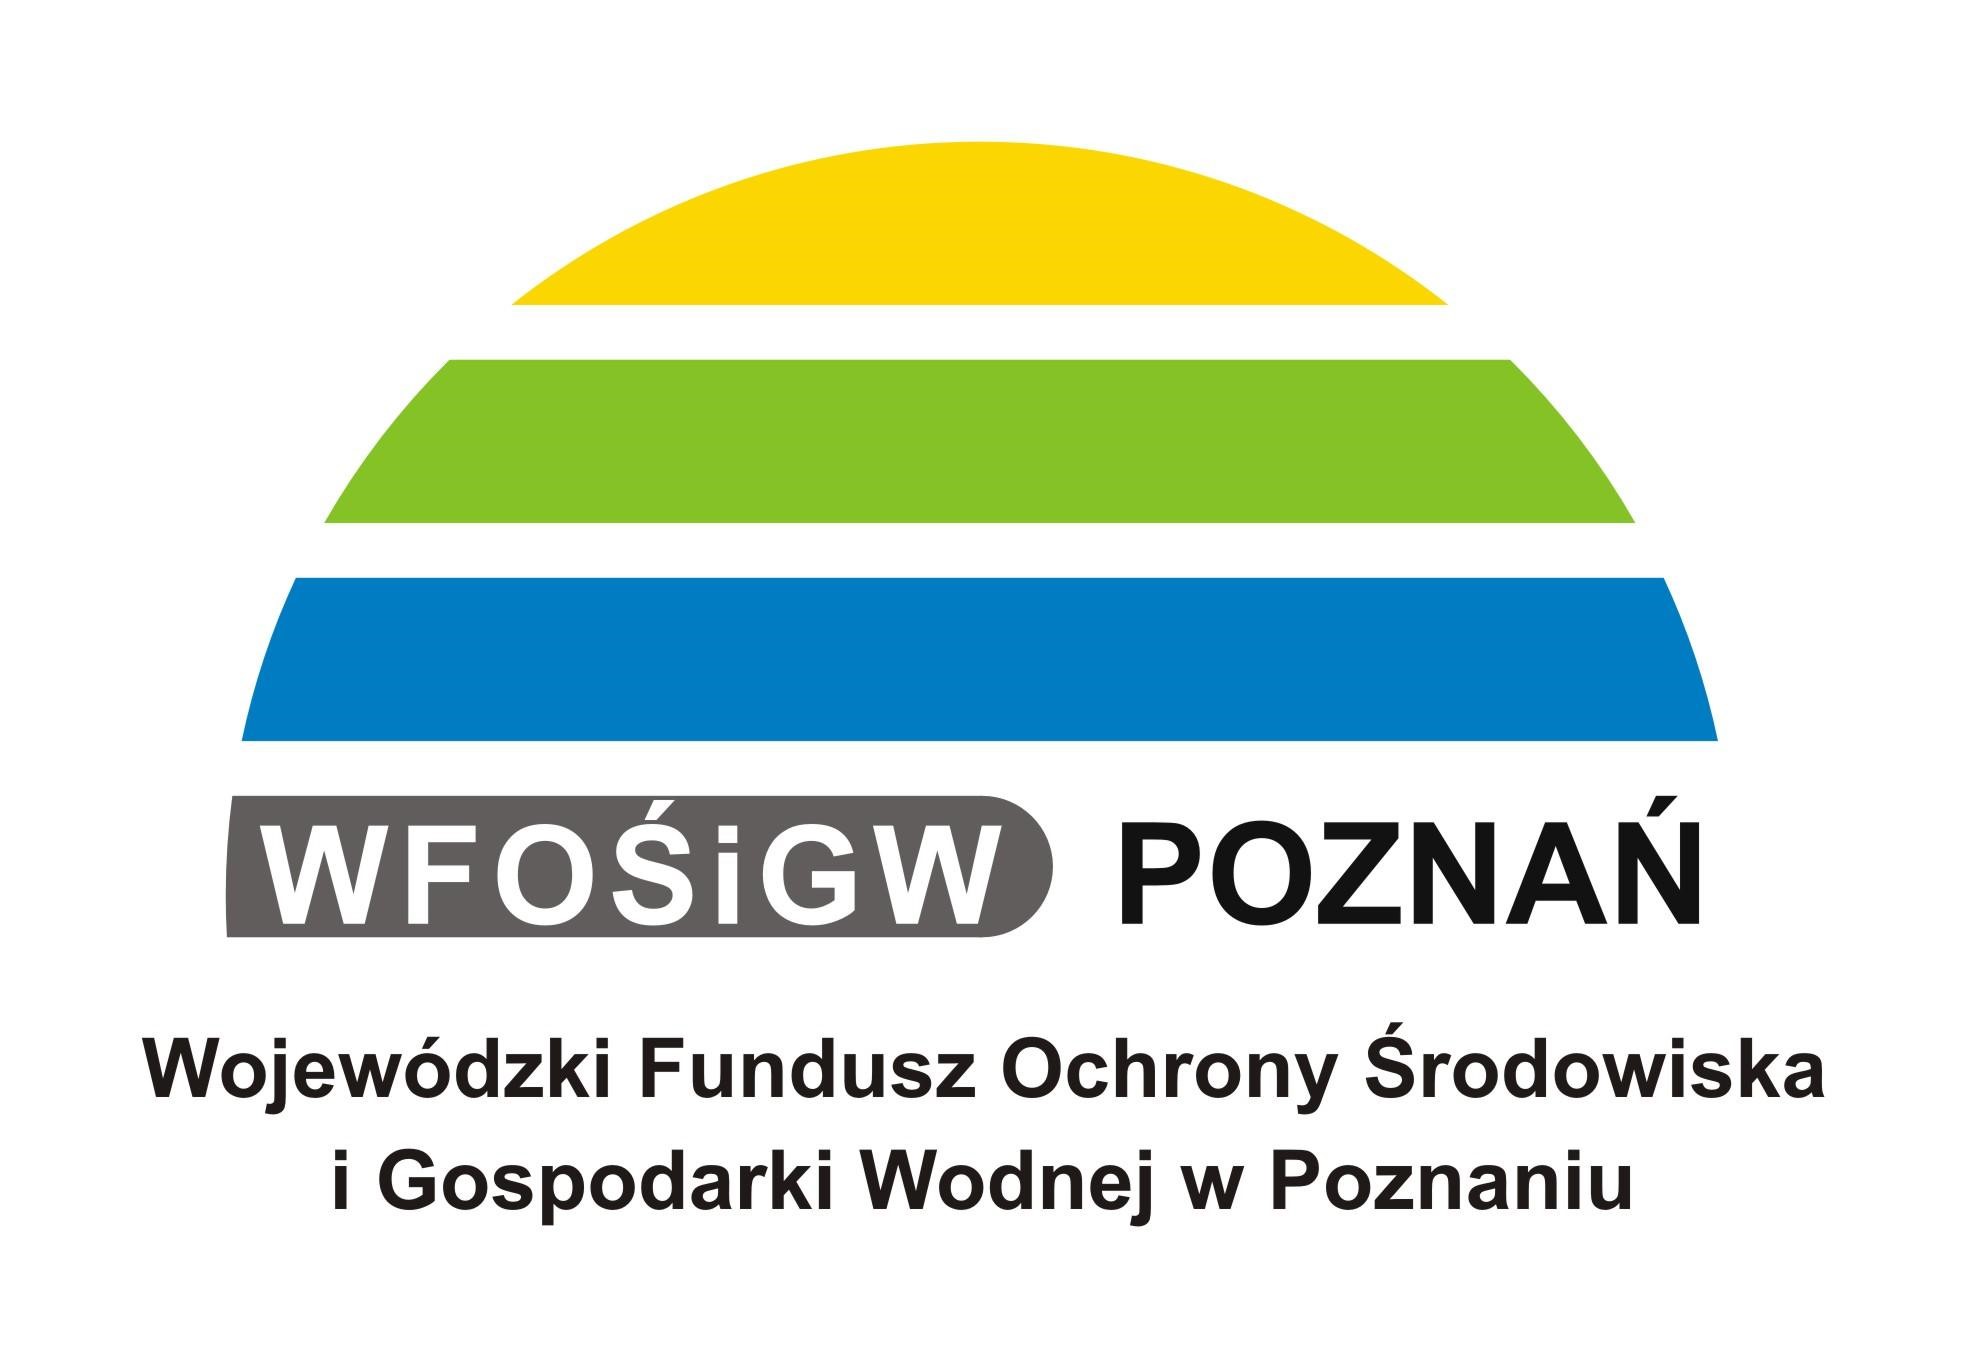 Wojewódzki Fundusz Ochrony Środowiska i Gospodarki Wodnej w Poznaniu - kliknięcie spowoduje otwarcie nowego okna